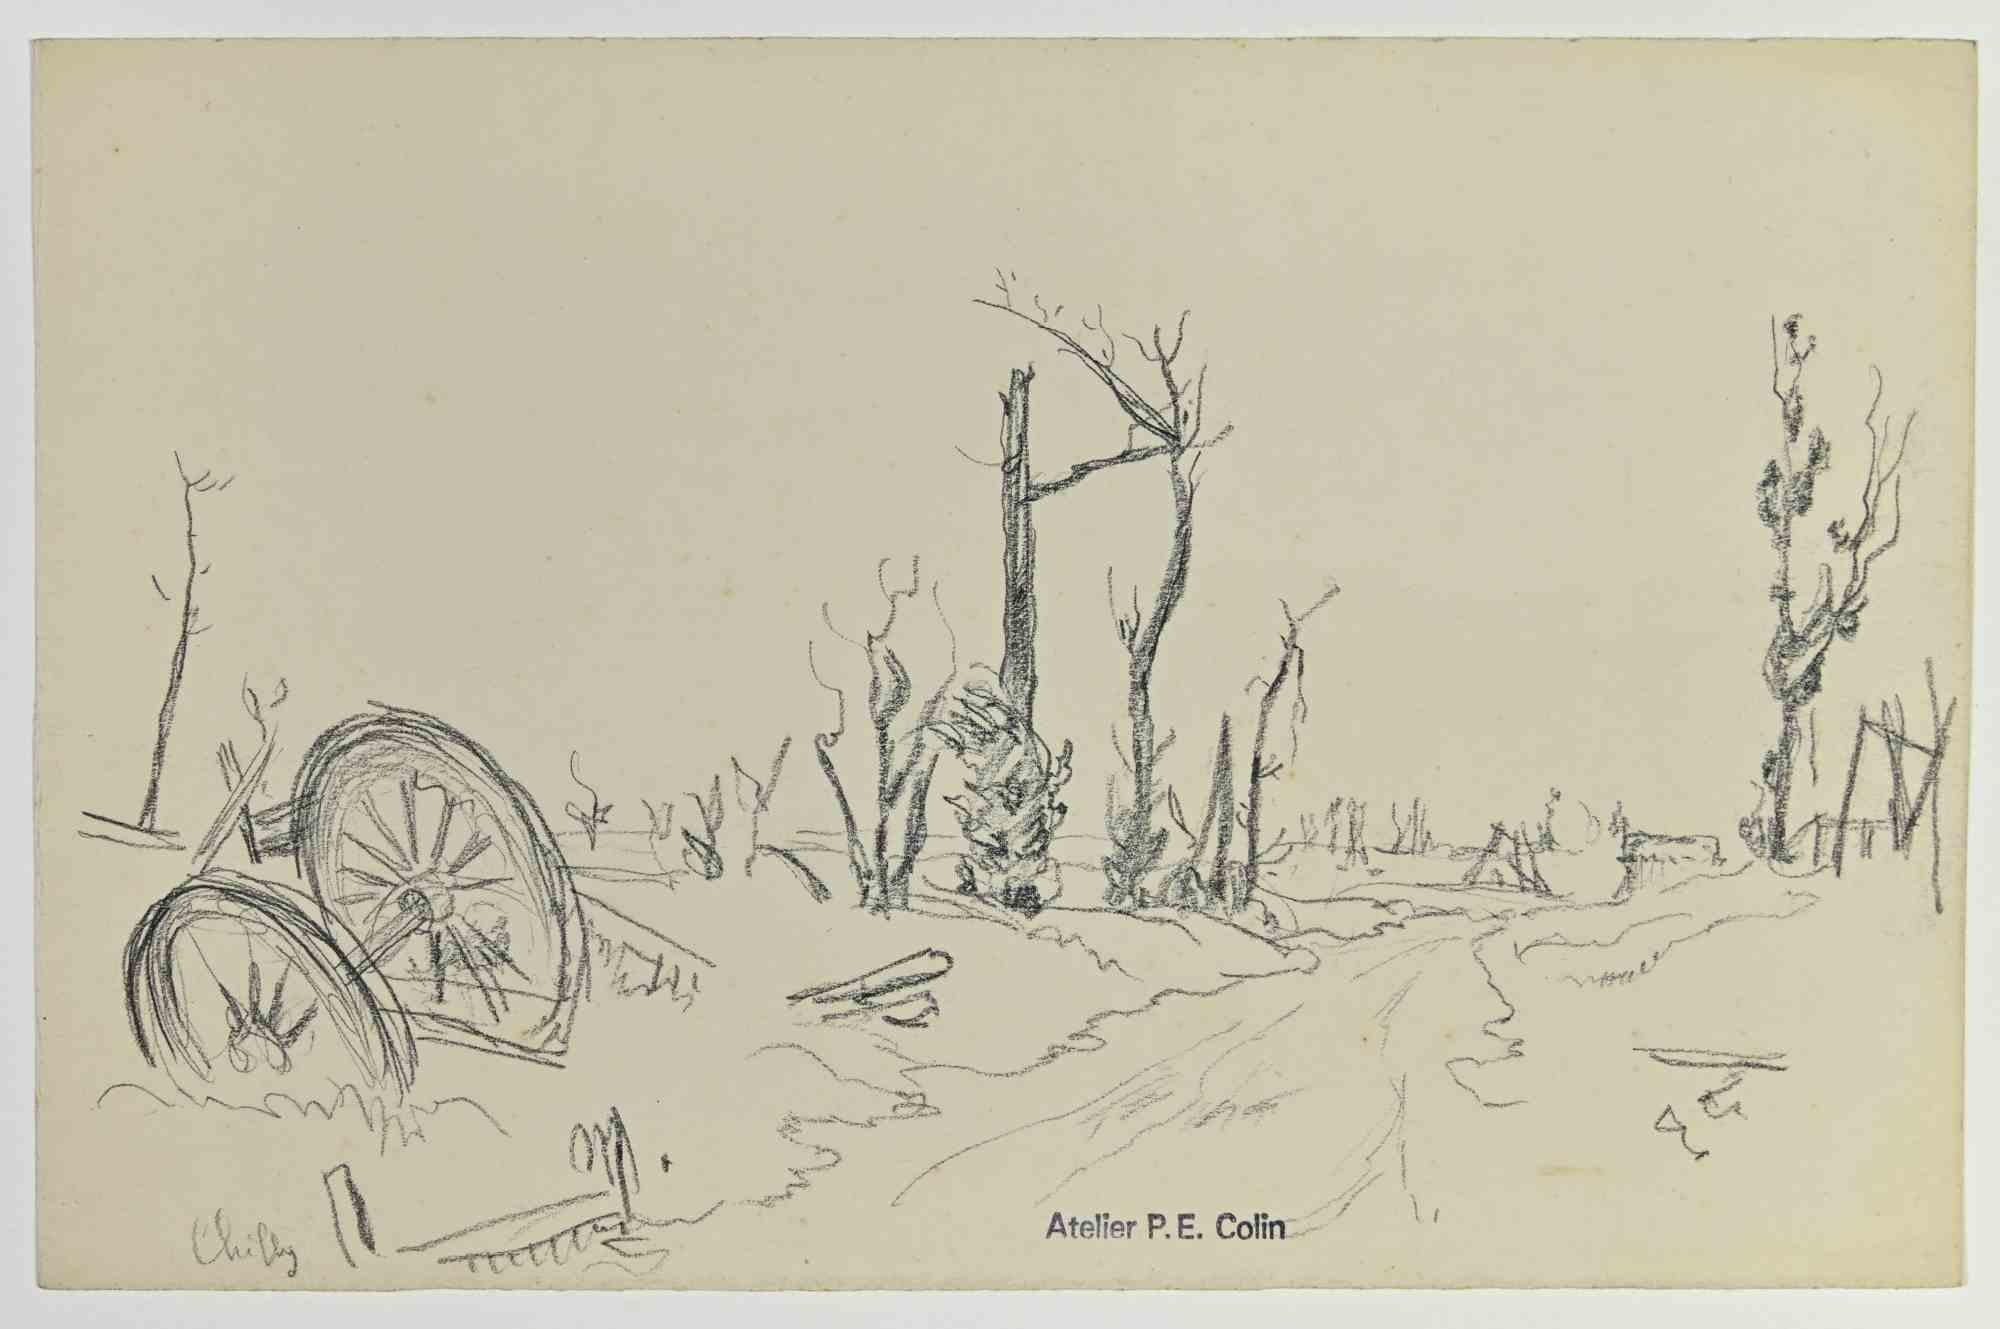 Die Straße ist eine Zeichnung von Paul Emile Colin aus dem frühen 20. Jahrhundert.

Kohlestift auf elfenbeinfarbenem Papier

Auf der Unterseite gestempelt.

Guter Zustand mit leichten Stockflecken.

Das Kunstwerk wird durch geschickte